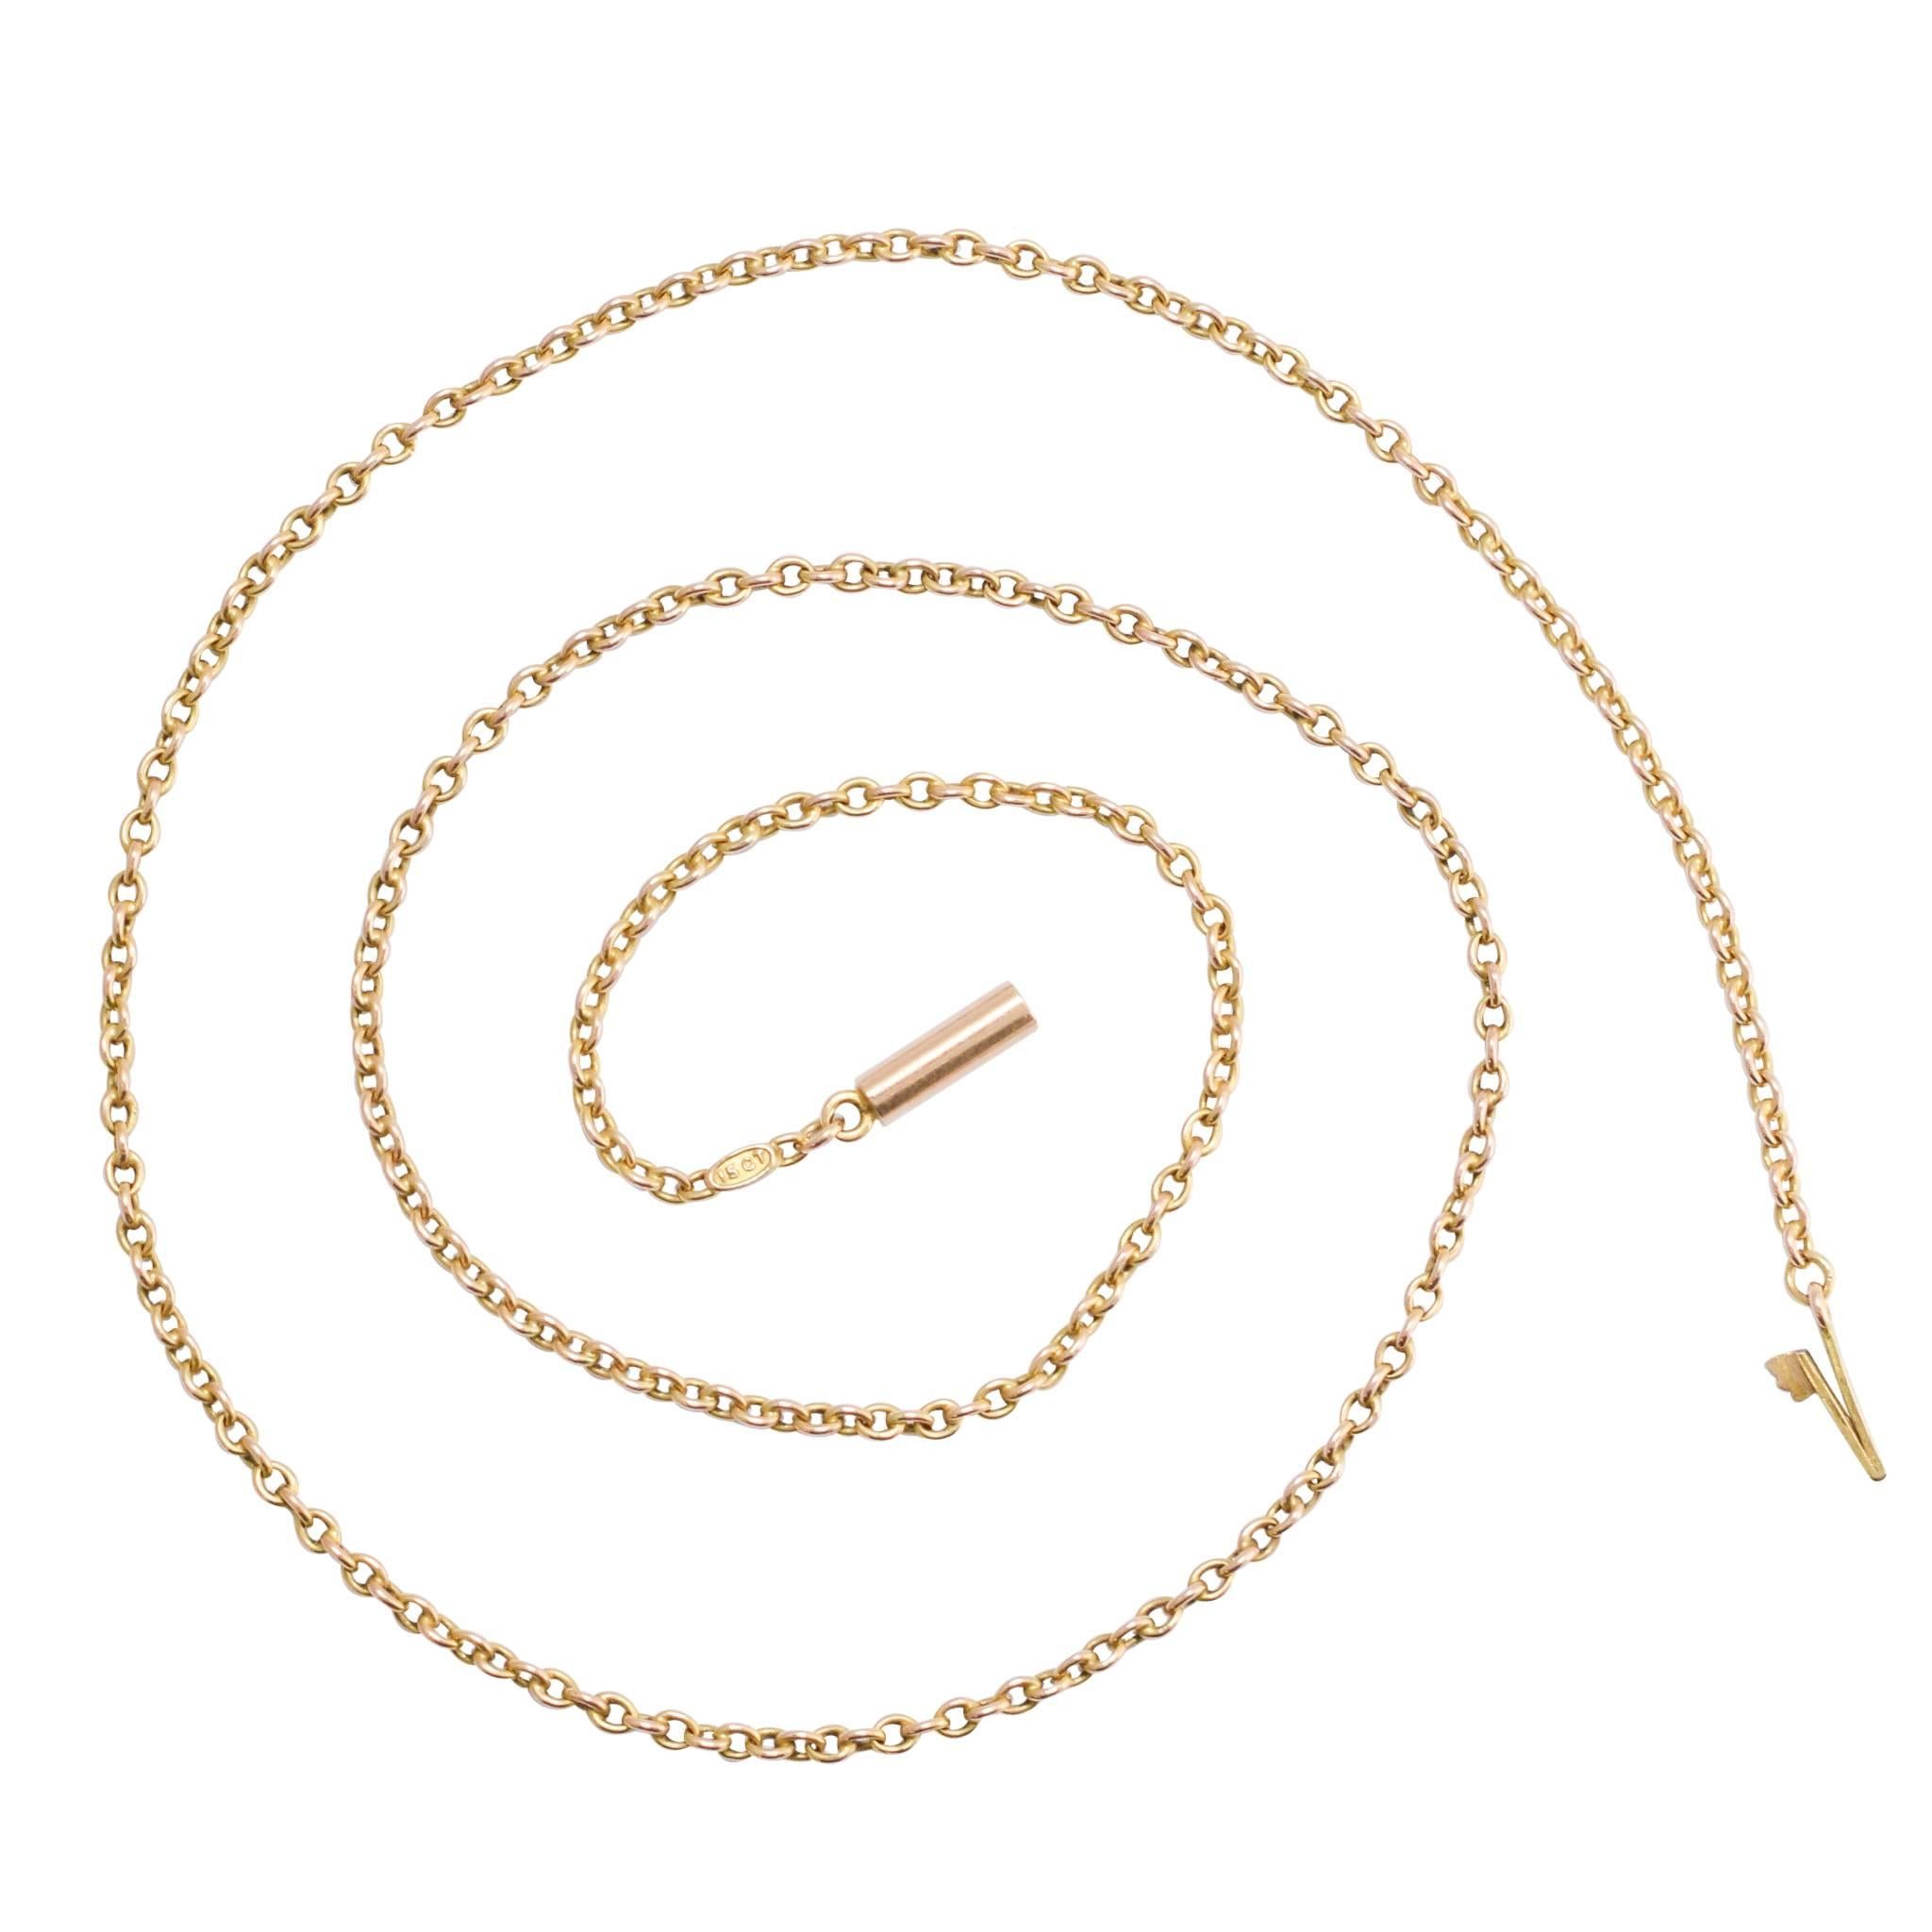 Victorian 15 Karat Gold Chain Necklace